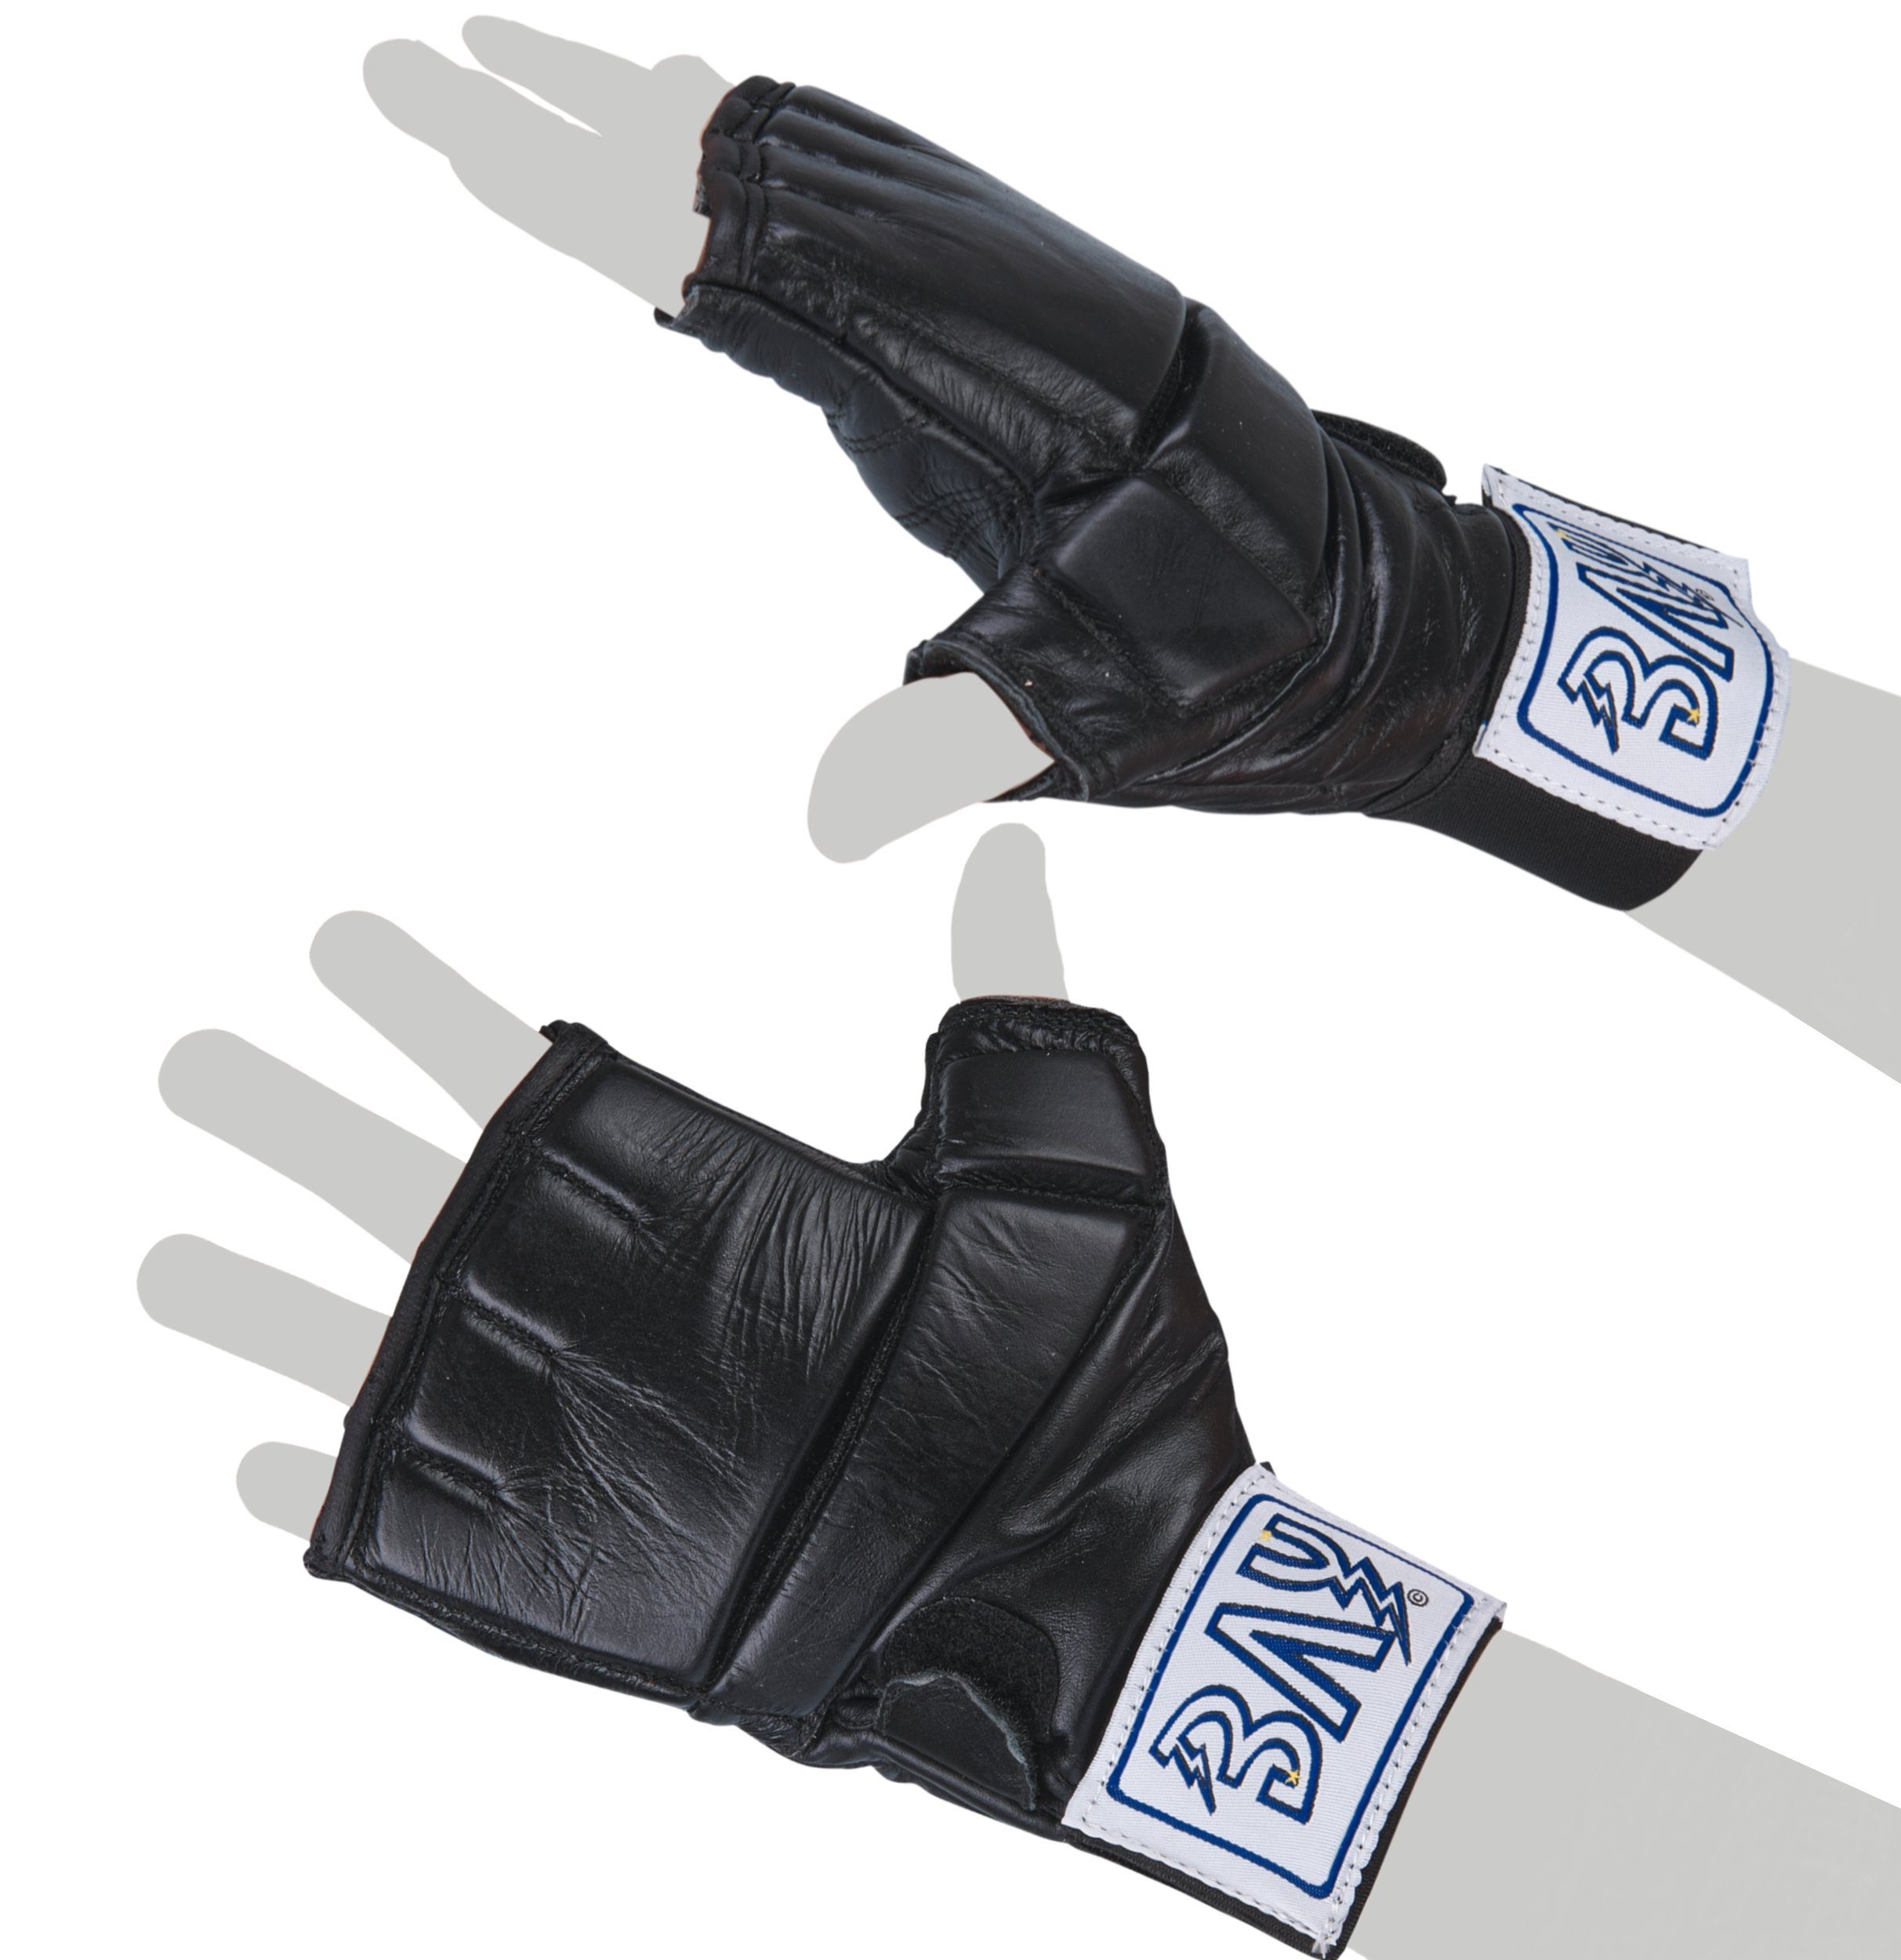 BAY-Sports Sandsackhandschuhe Gel Leder Boxhandschuhe Boxsack Sandsack Handschut, Gel Pad Polsterung S - XL